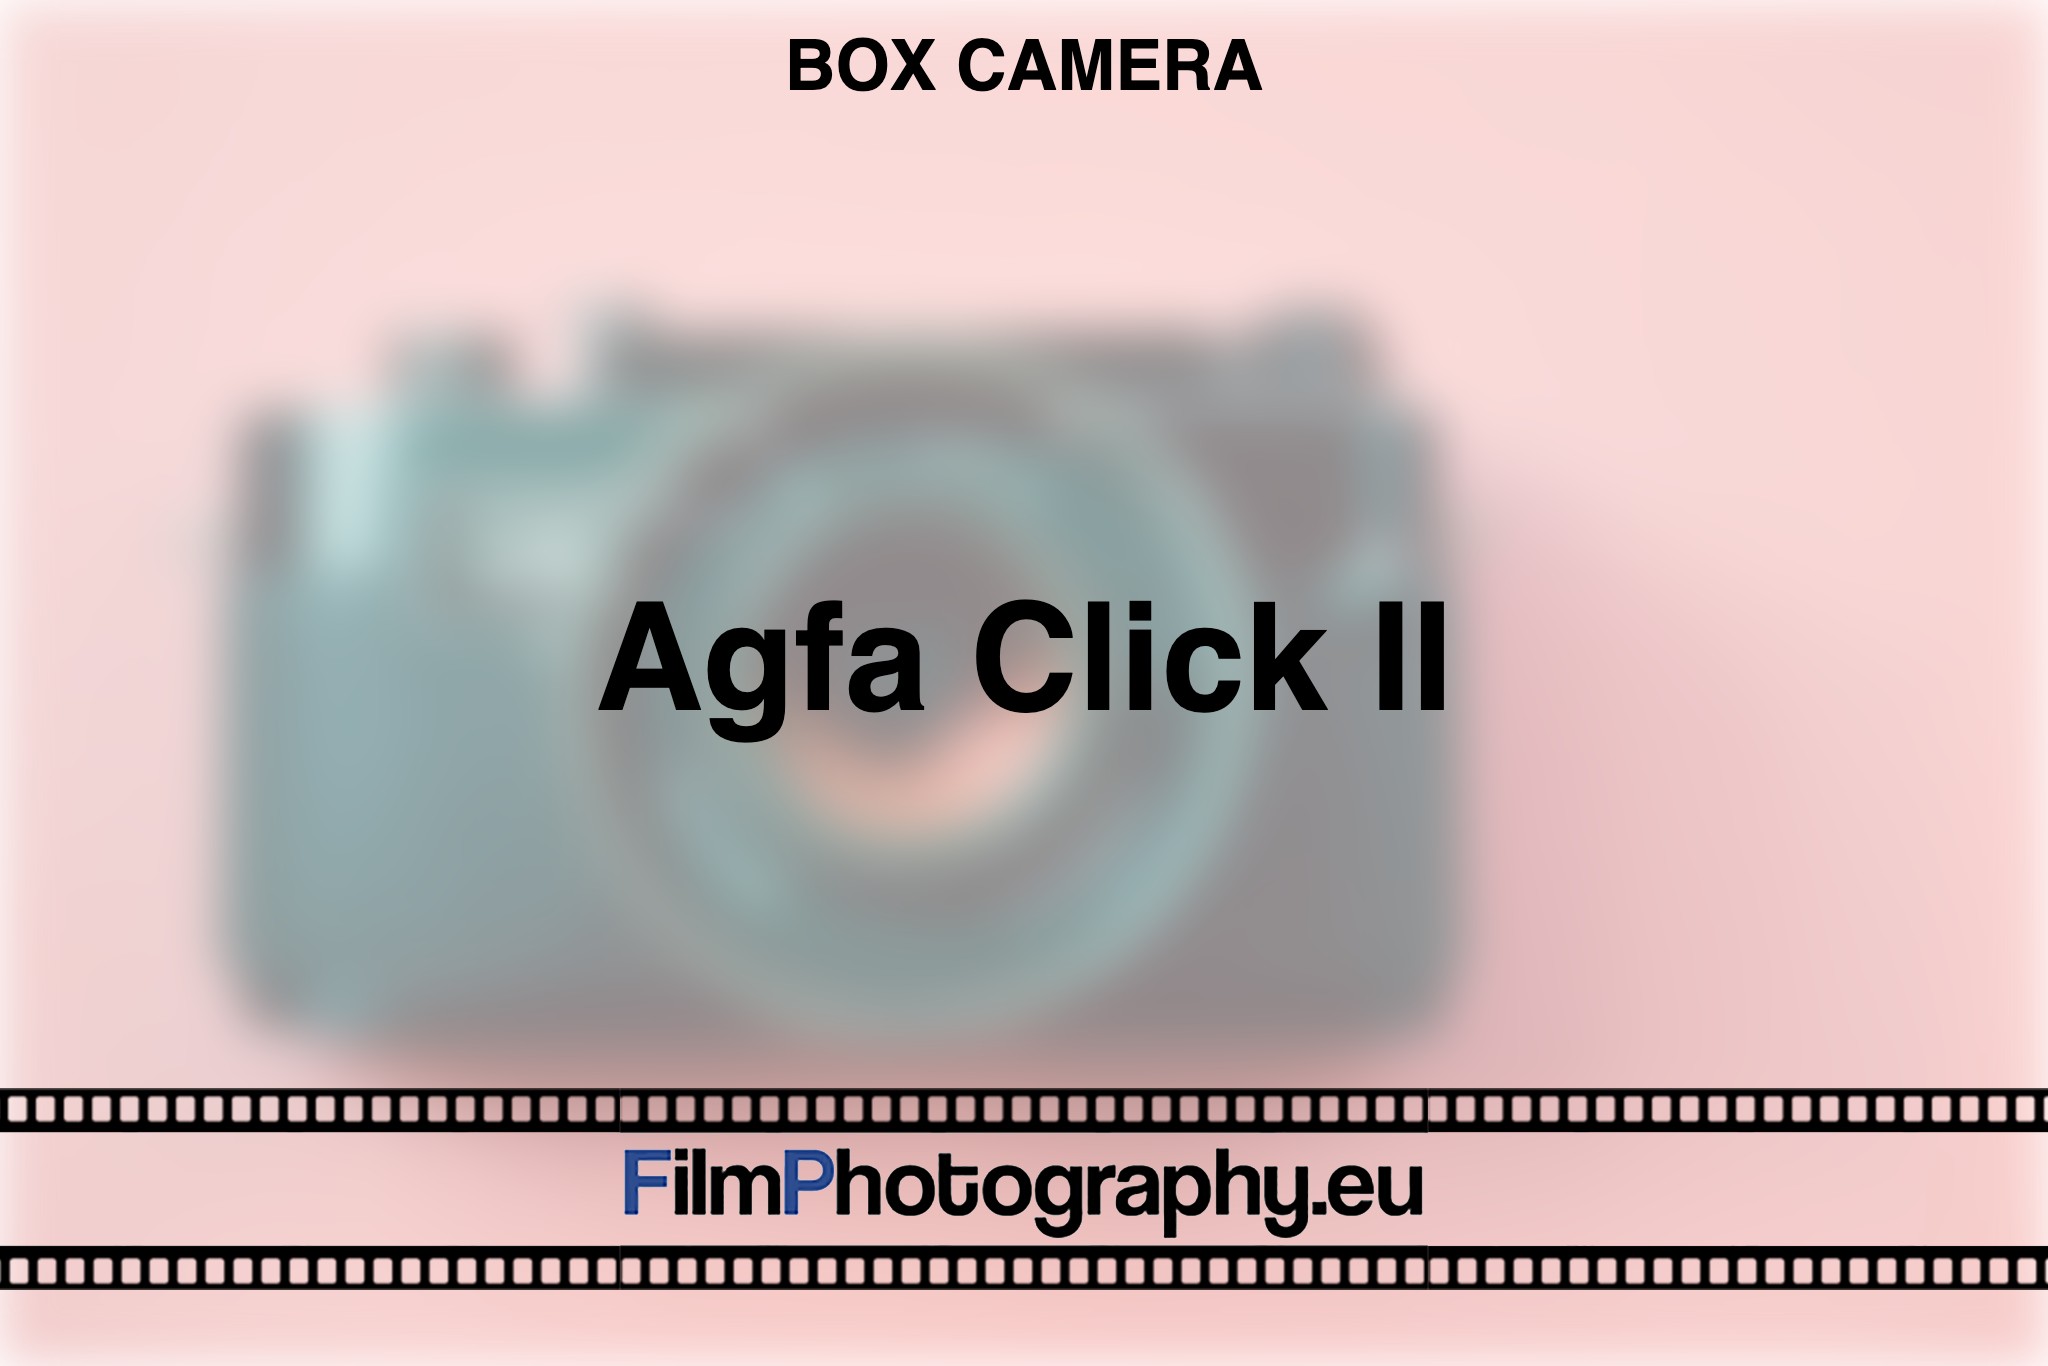 agfa-click-ii-box-camera-bnv